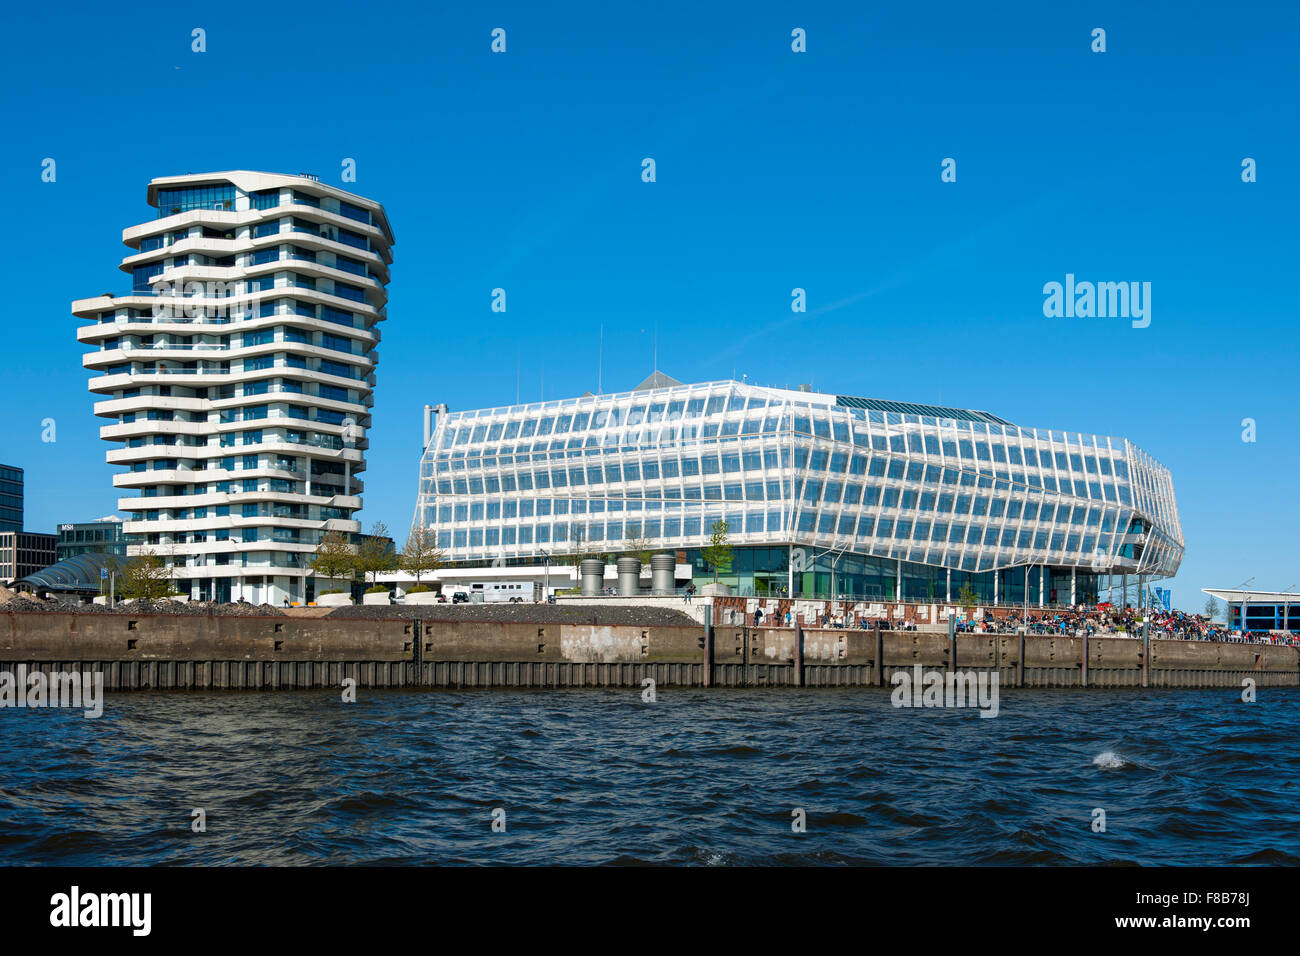 Deutschland, Hambourg, HafenCity, Unilever-Haus Strandkai, 1 liens, Marco-Polo der-Tour, Blick von der Norderelbe Banque D'Images